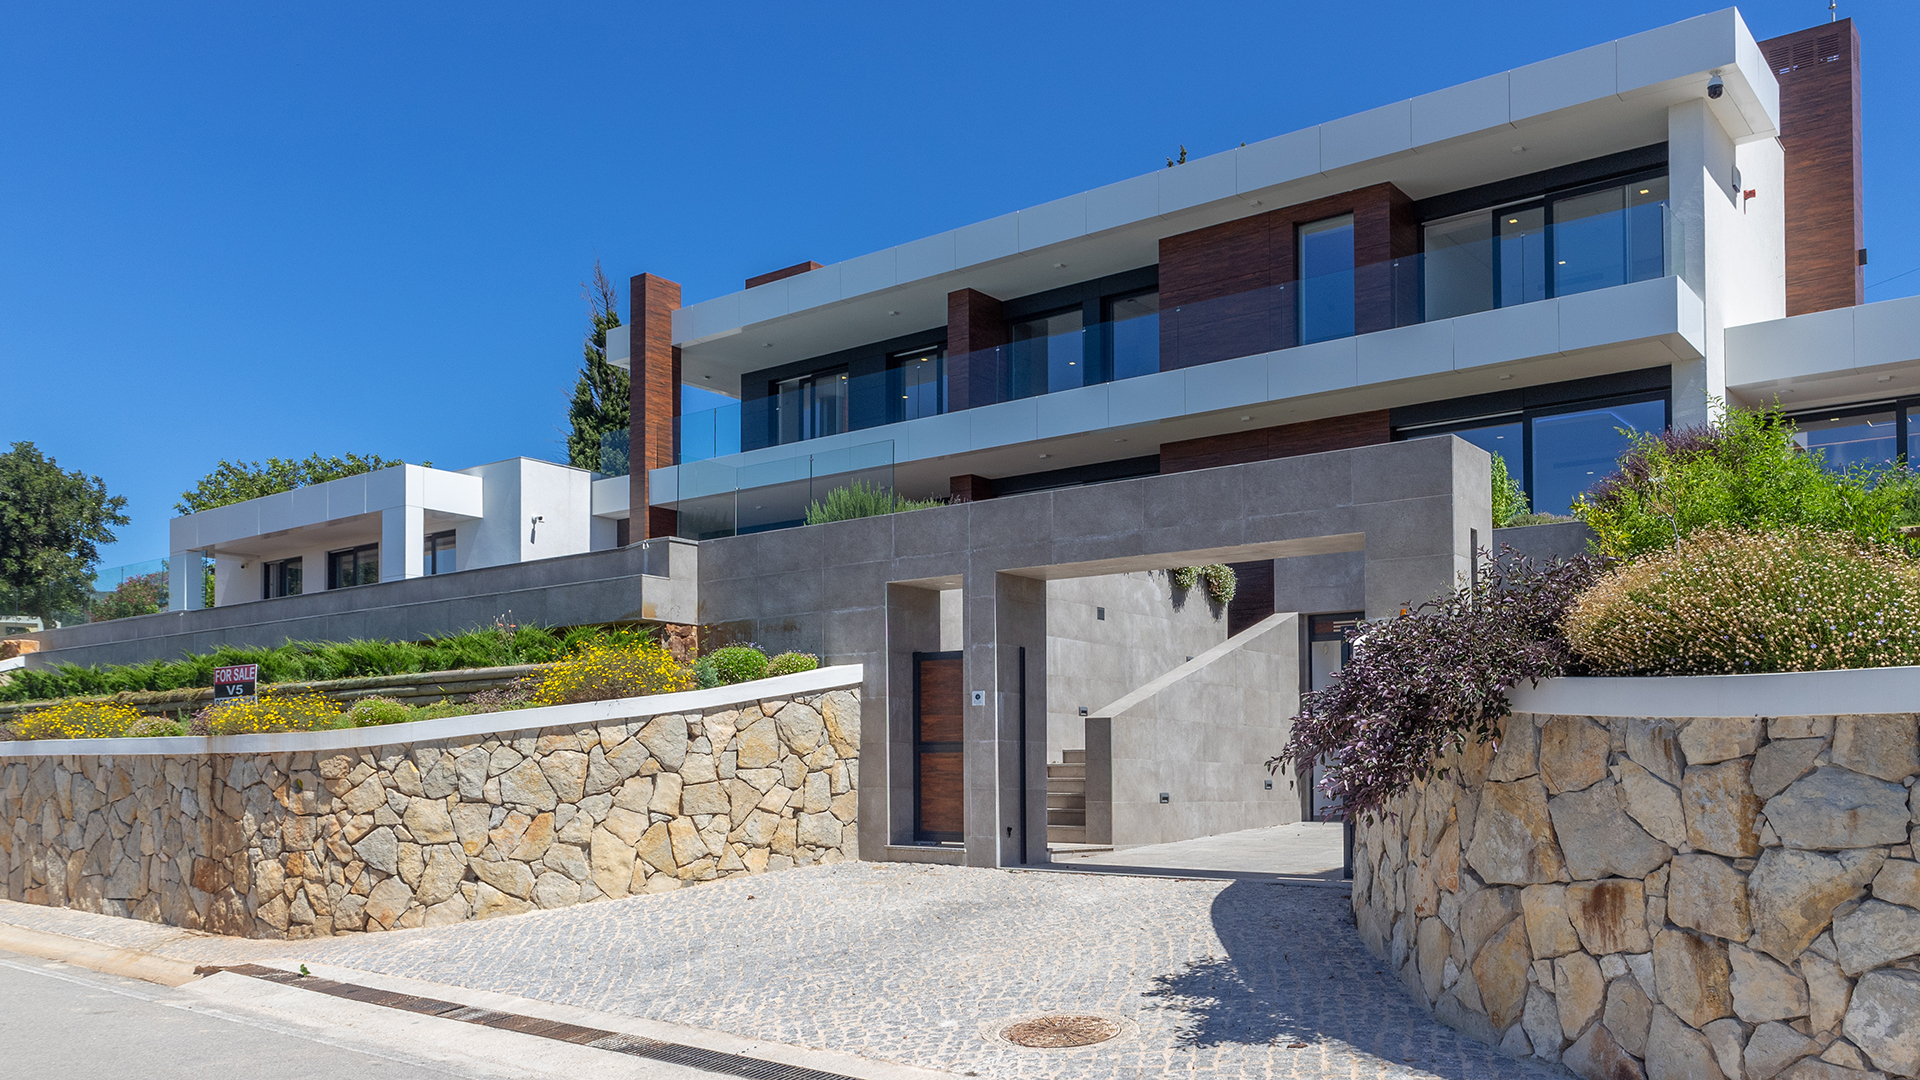 Luxuriöse Villa mit Pool und spektakulärer Aussicht, Caldas de Monchique | LG1938 Fantastisches, brandneues und modernes Haus, das für ein komfortables Leben und viel Freiraum gebaut wurde. Unter Verwendung innovativer Materialien und Technologien ist dies ein energieeffizientes Gebäude voller Raum, Licht und klaren Linien. Ein Ort, um die Ruhe abseits der geschäftigen Küste zu geniessen, trotzdem nicht zu weit von allem entfernt, was die Algarve zu bieten hat.